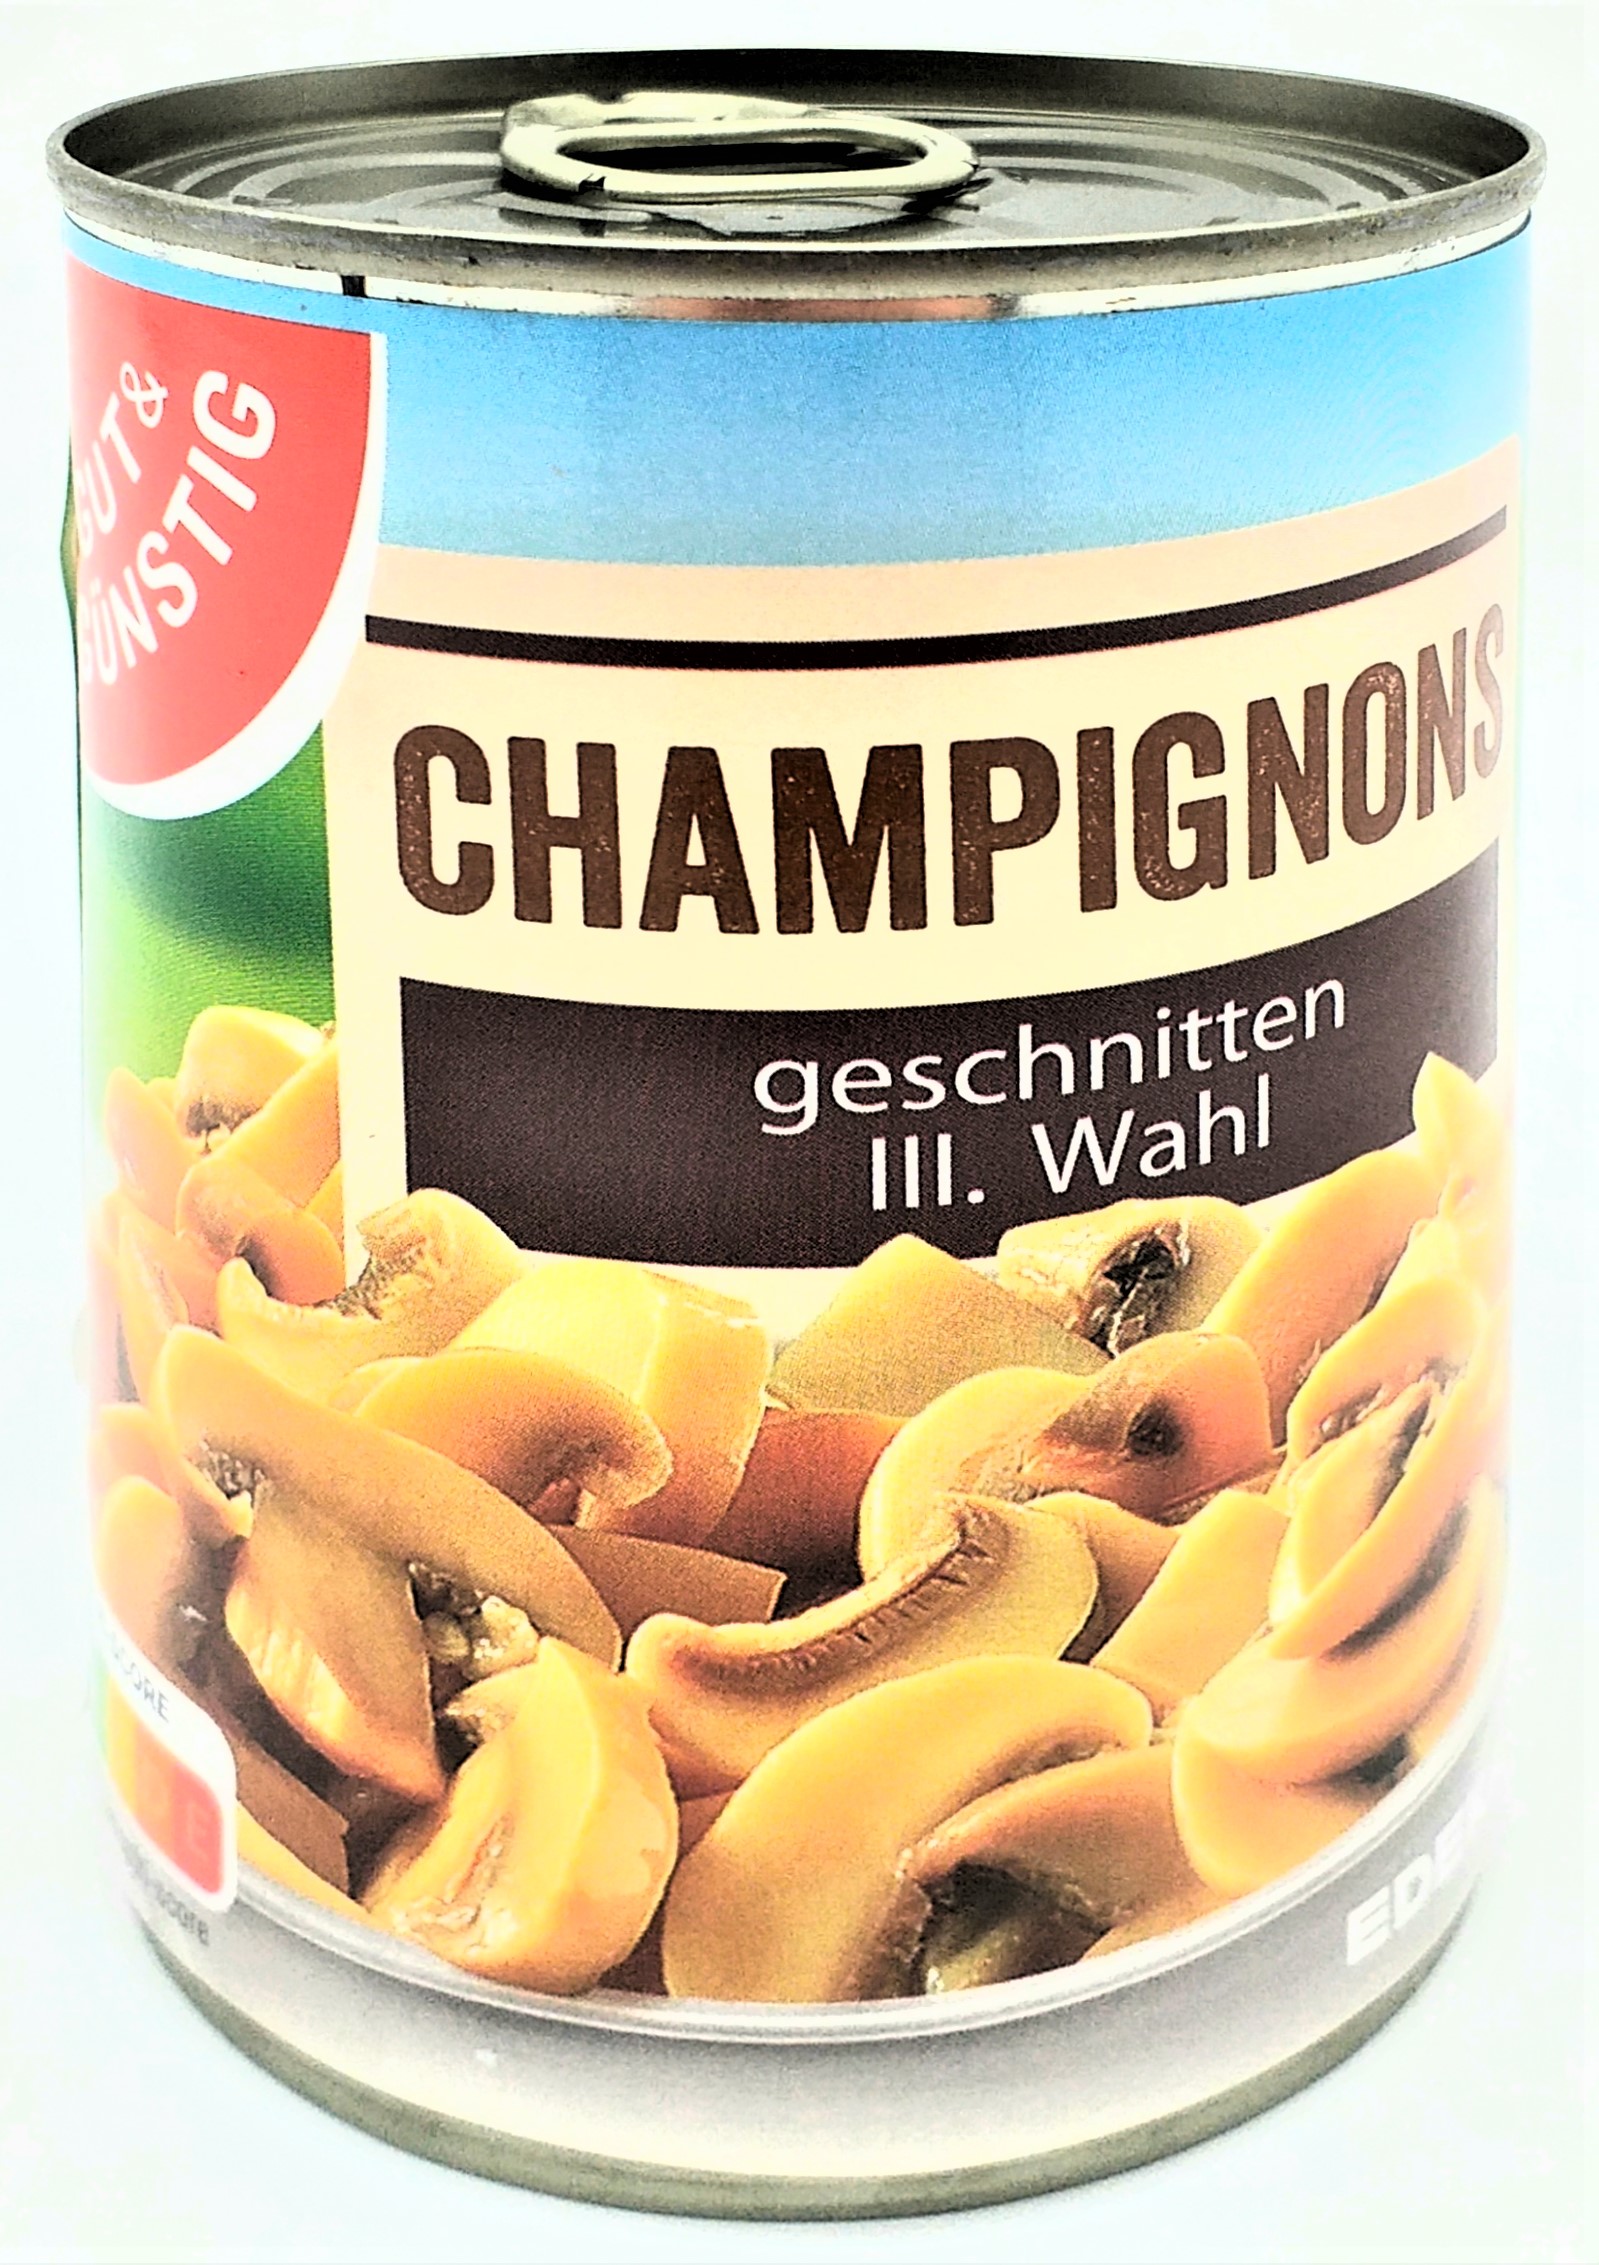 G&G Champignons 3.Wahl geschnitten 170g